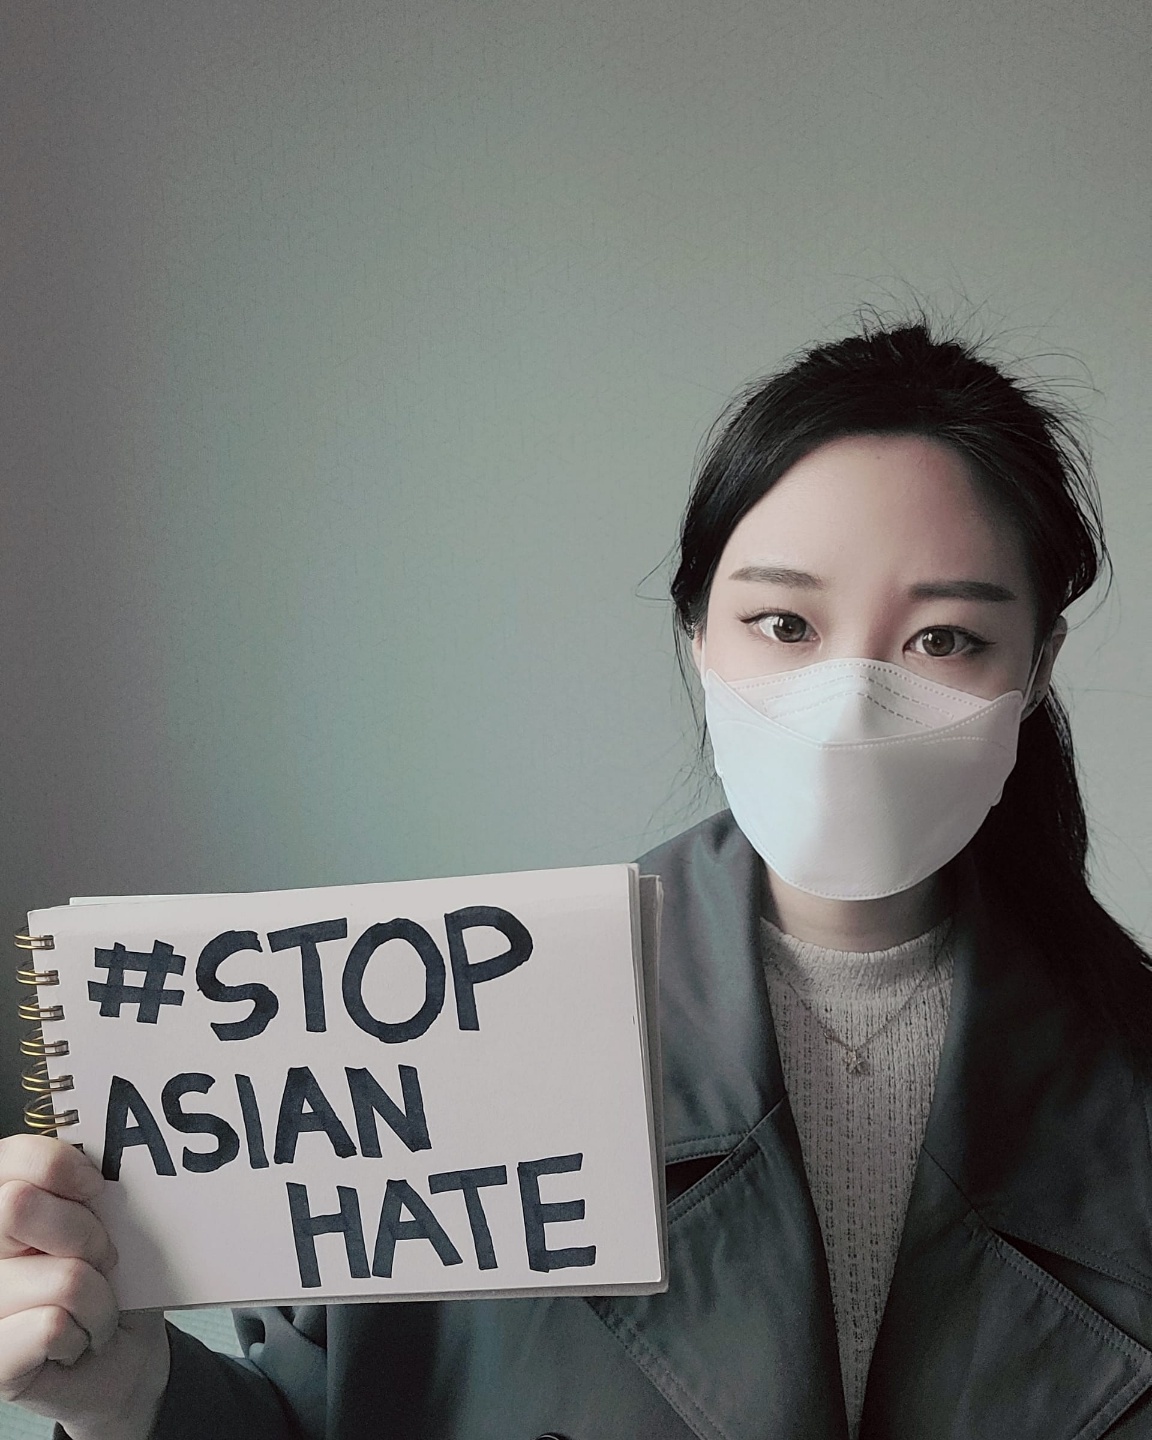 사진은 고예성 작가가 아시아 혐오에 반대한다는 의미의 ‘#STOPASIANHATE’라는 해시태그가 적힌 종이를 들고 찍은 사진. 고예성 작가 제공